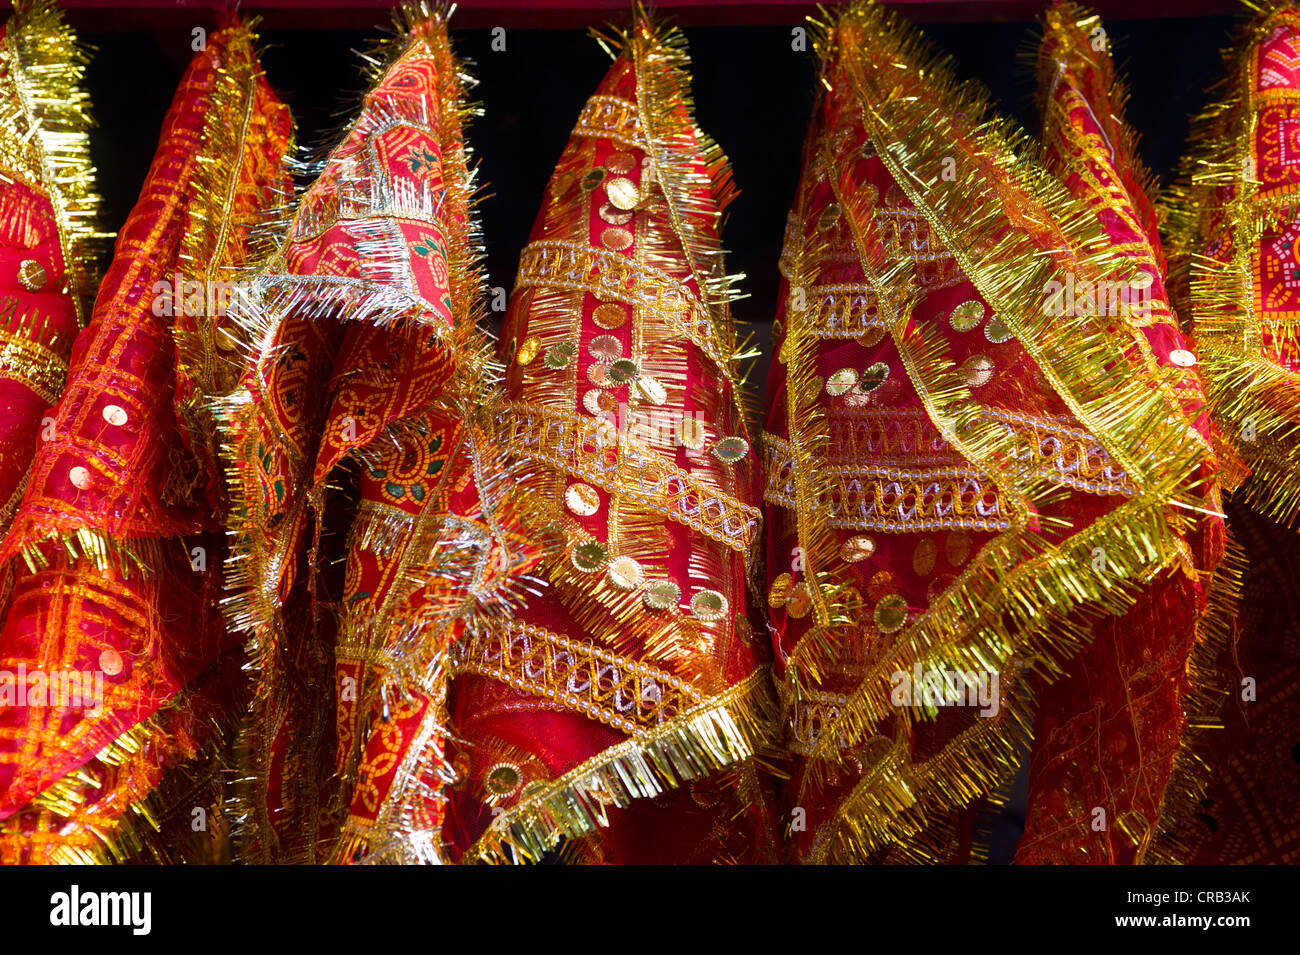 Farbige Handtücher im Kamakhya-Tempel, ein Hindu-Tempel, Guwahati, Assam, Nordost-Indien, Indien, Asien Stockfoto